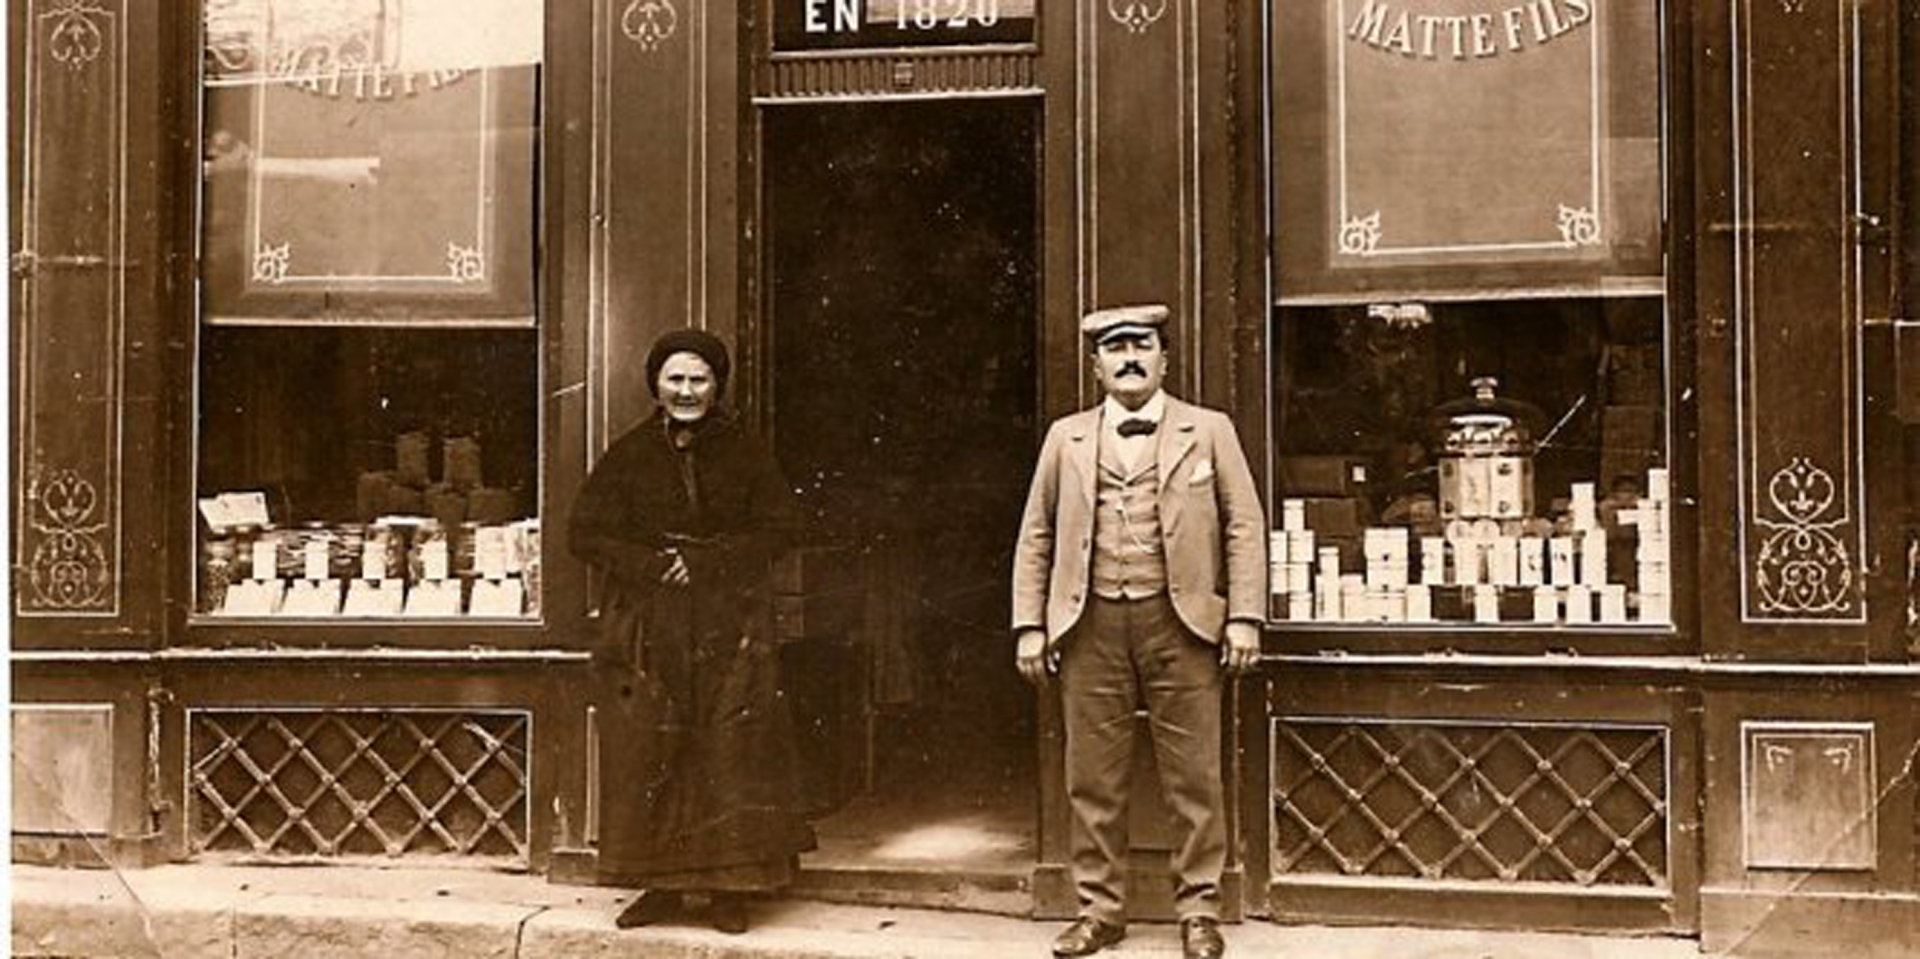 La boutique Matte fils, rue Saint-Guilhem